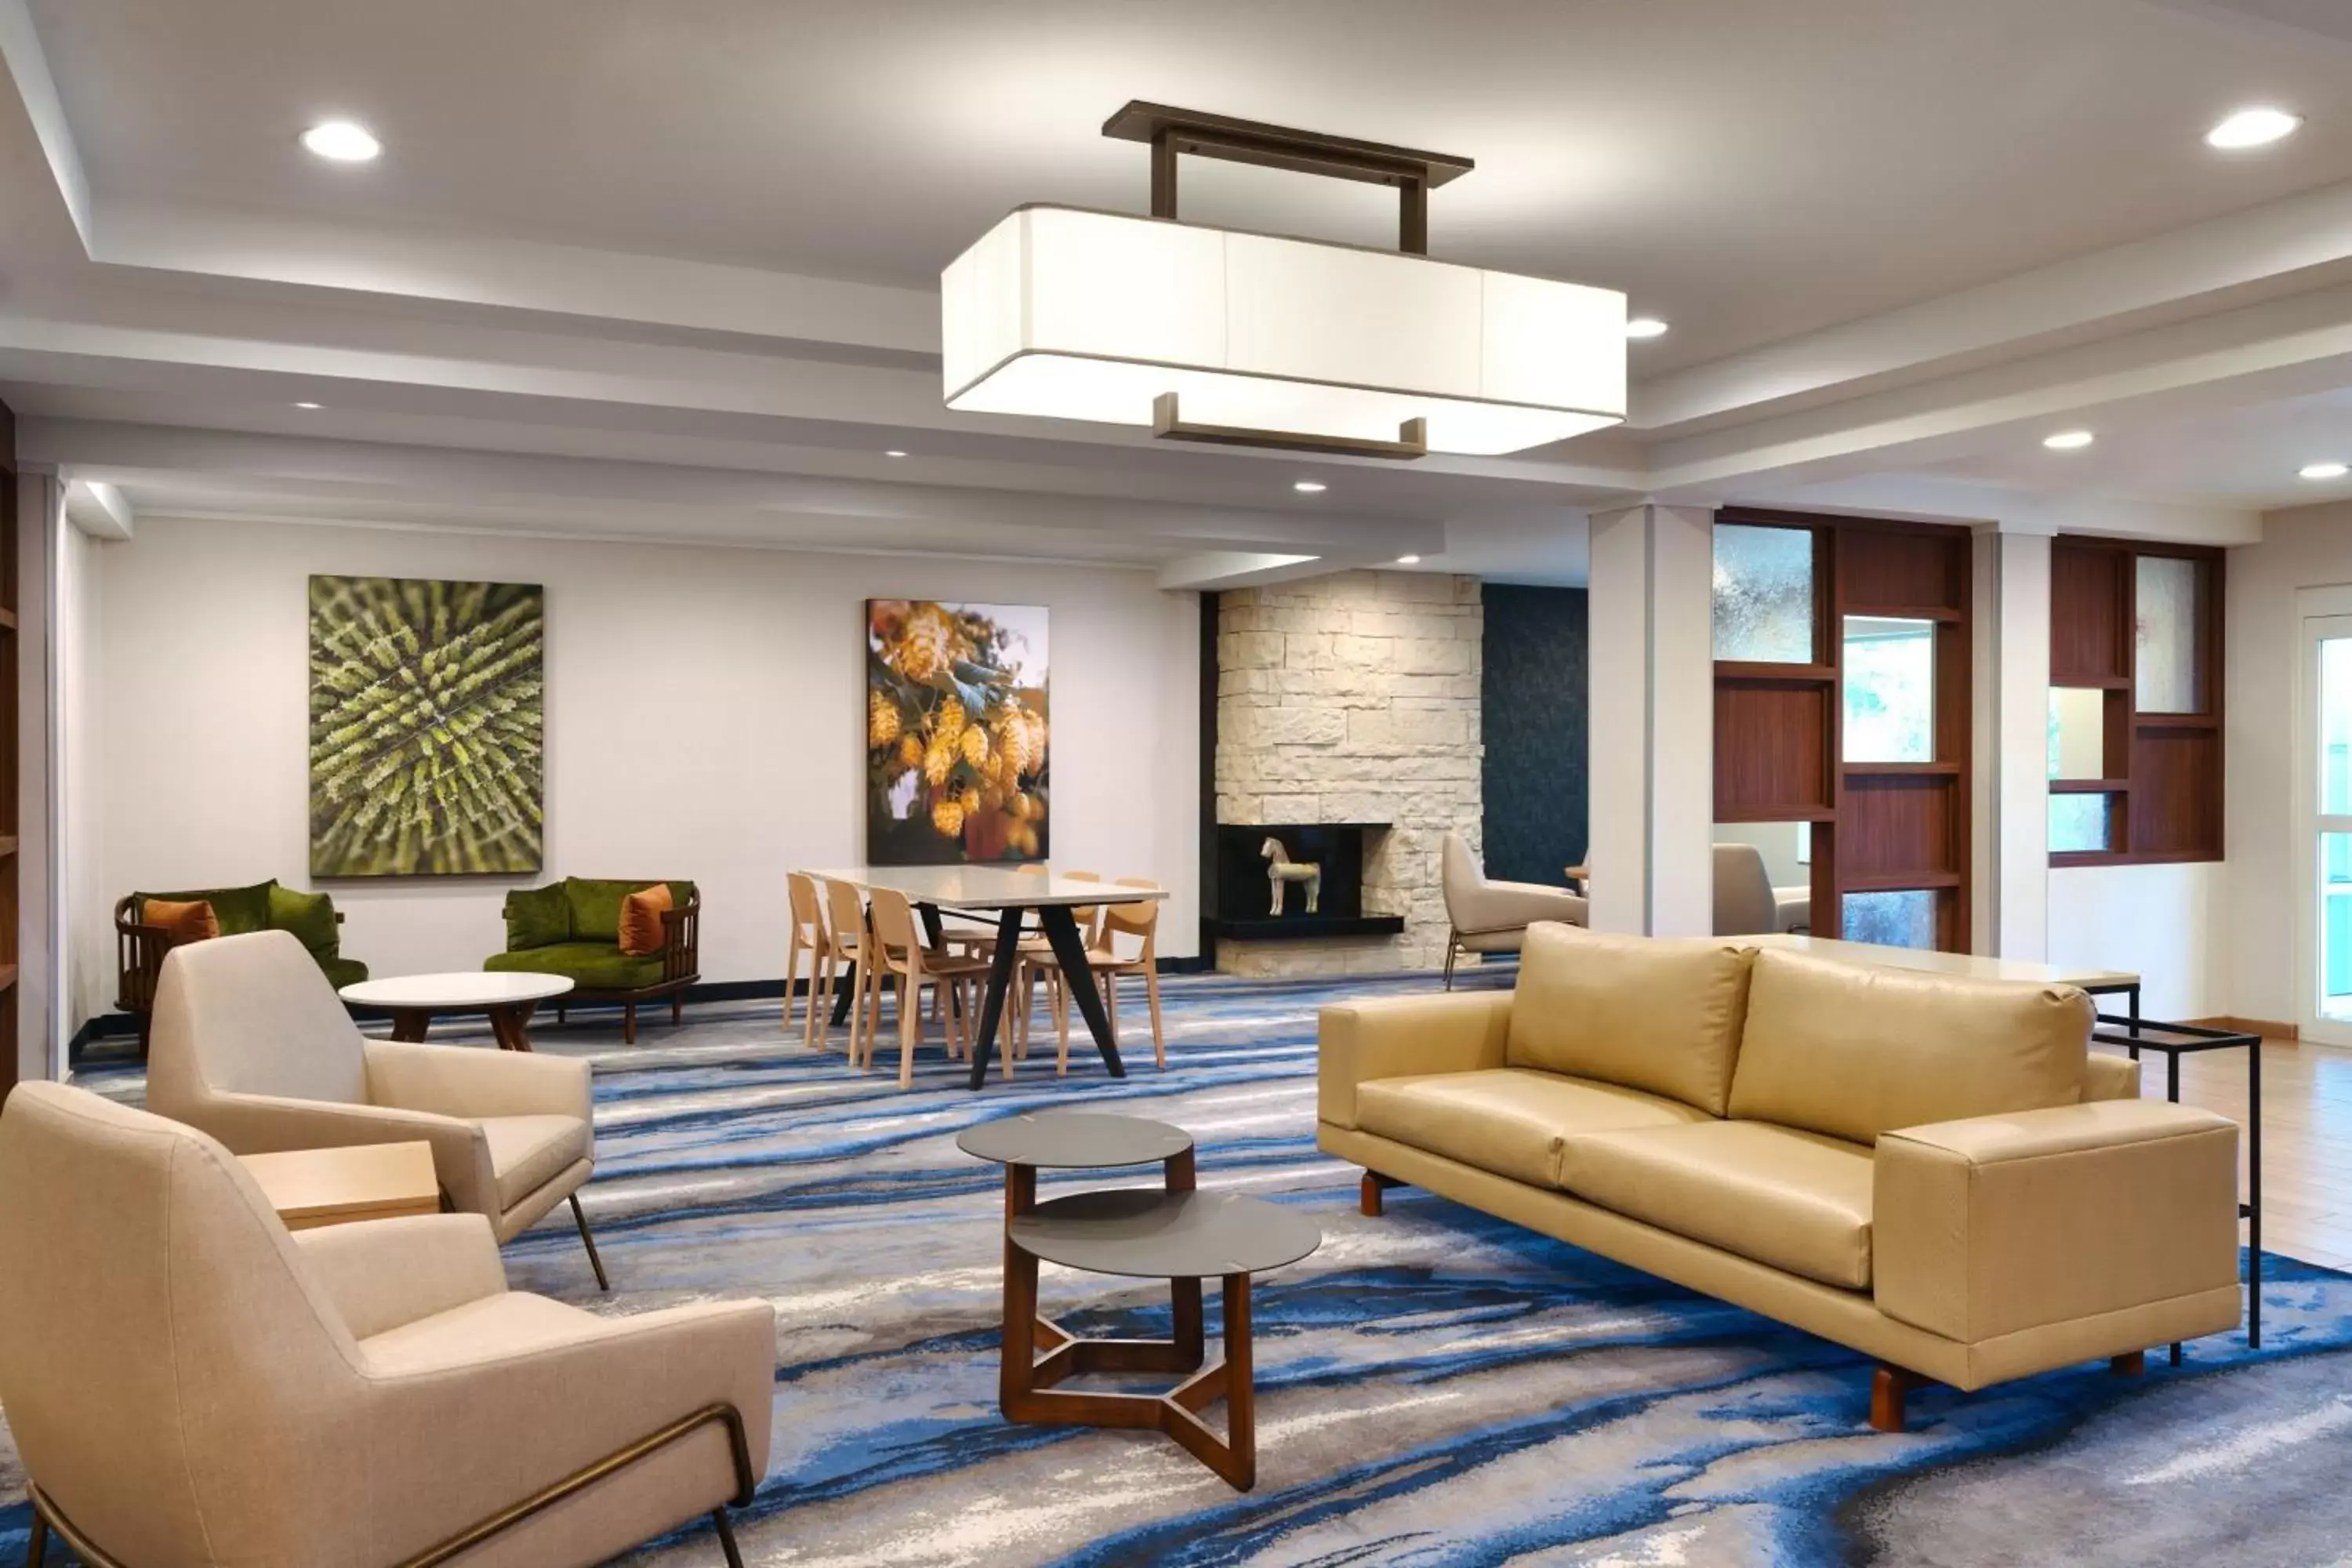 Lobby or reception in Fairfield Inn & Suites by Marriott Yakima